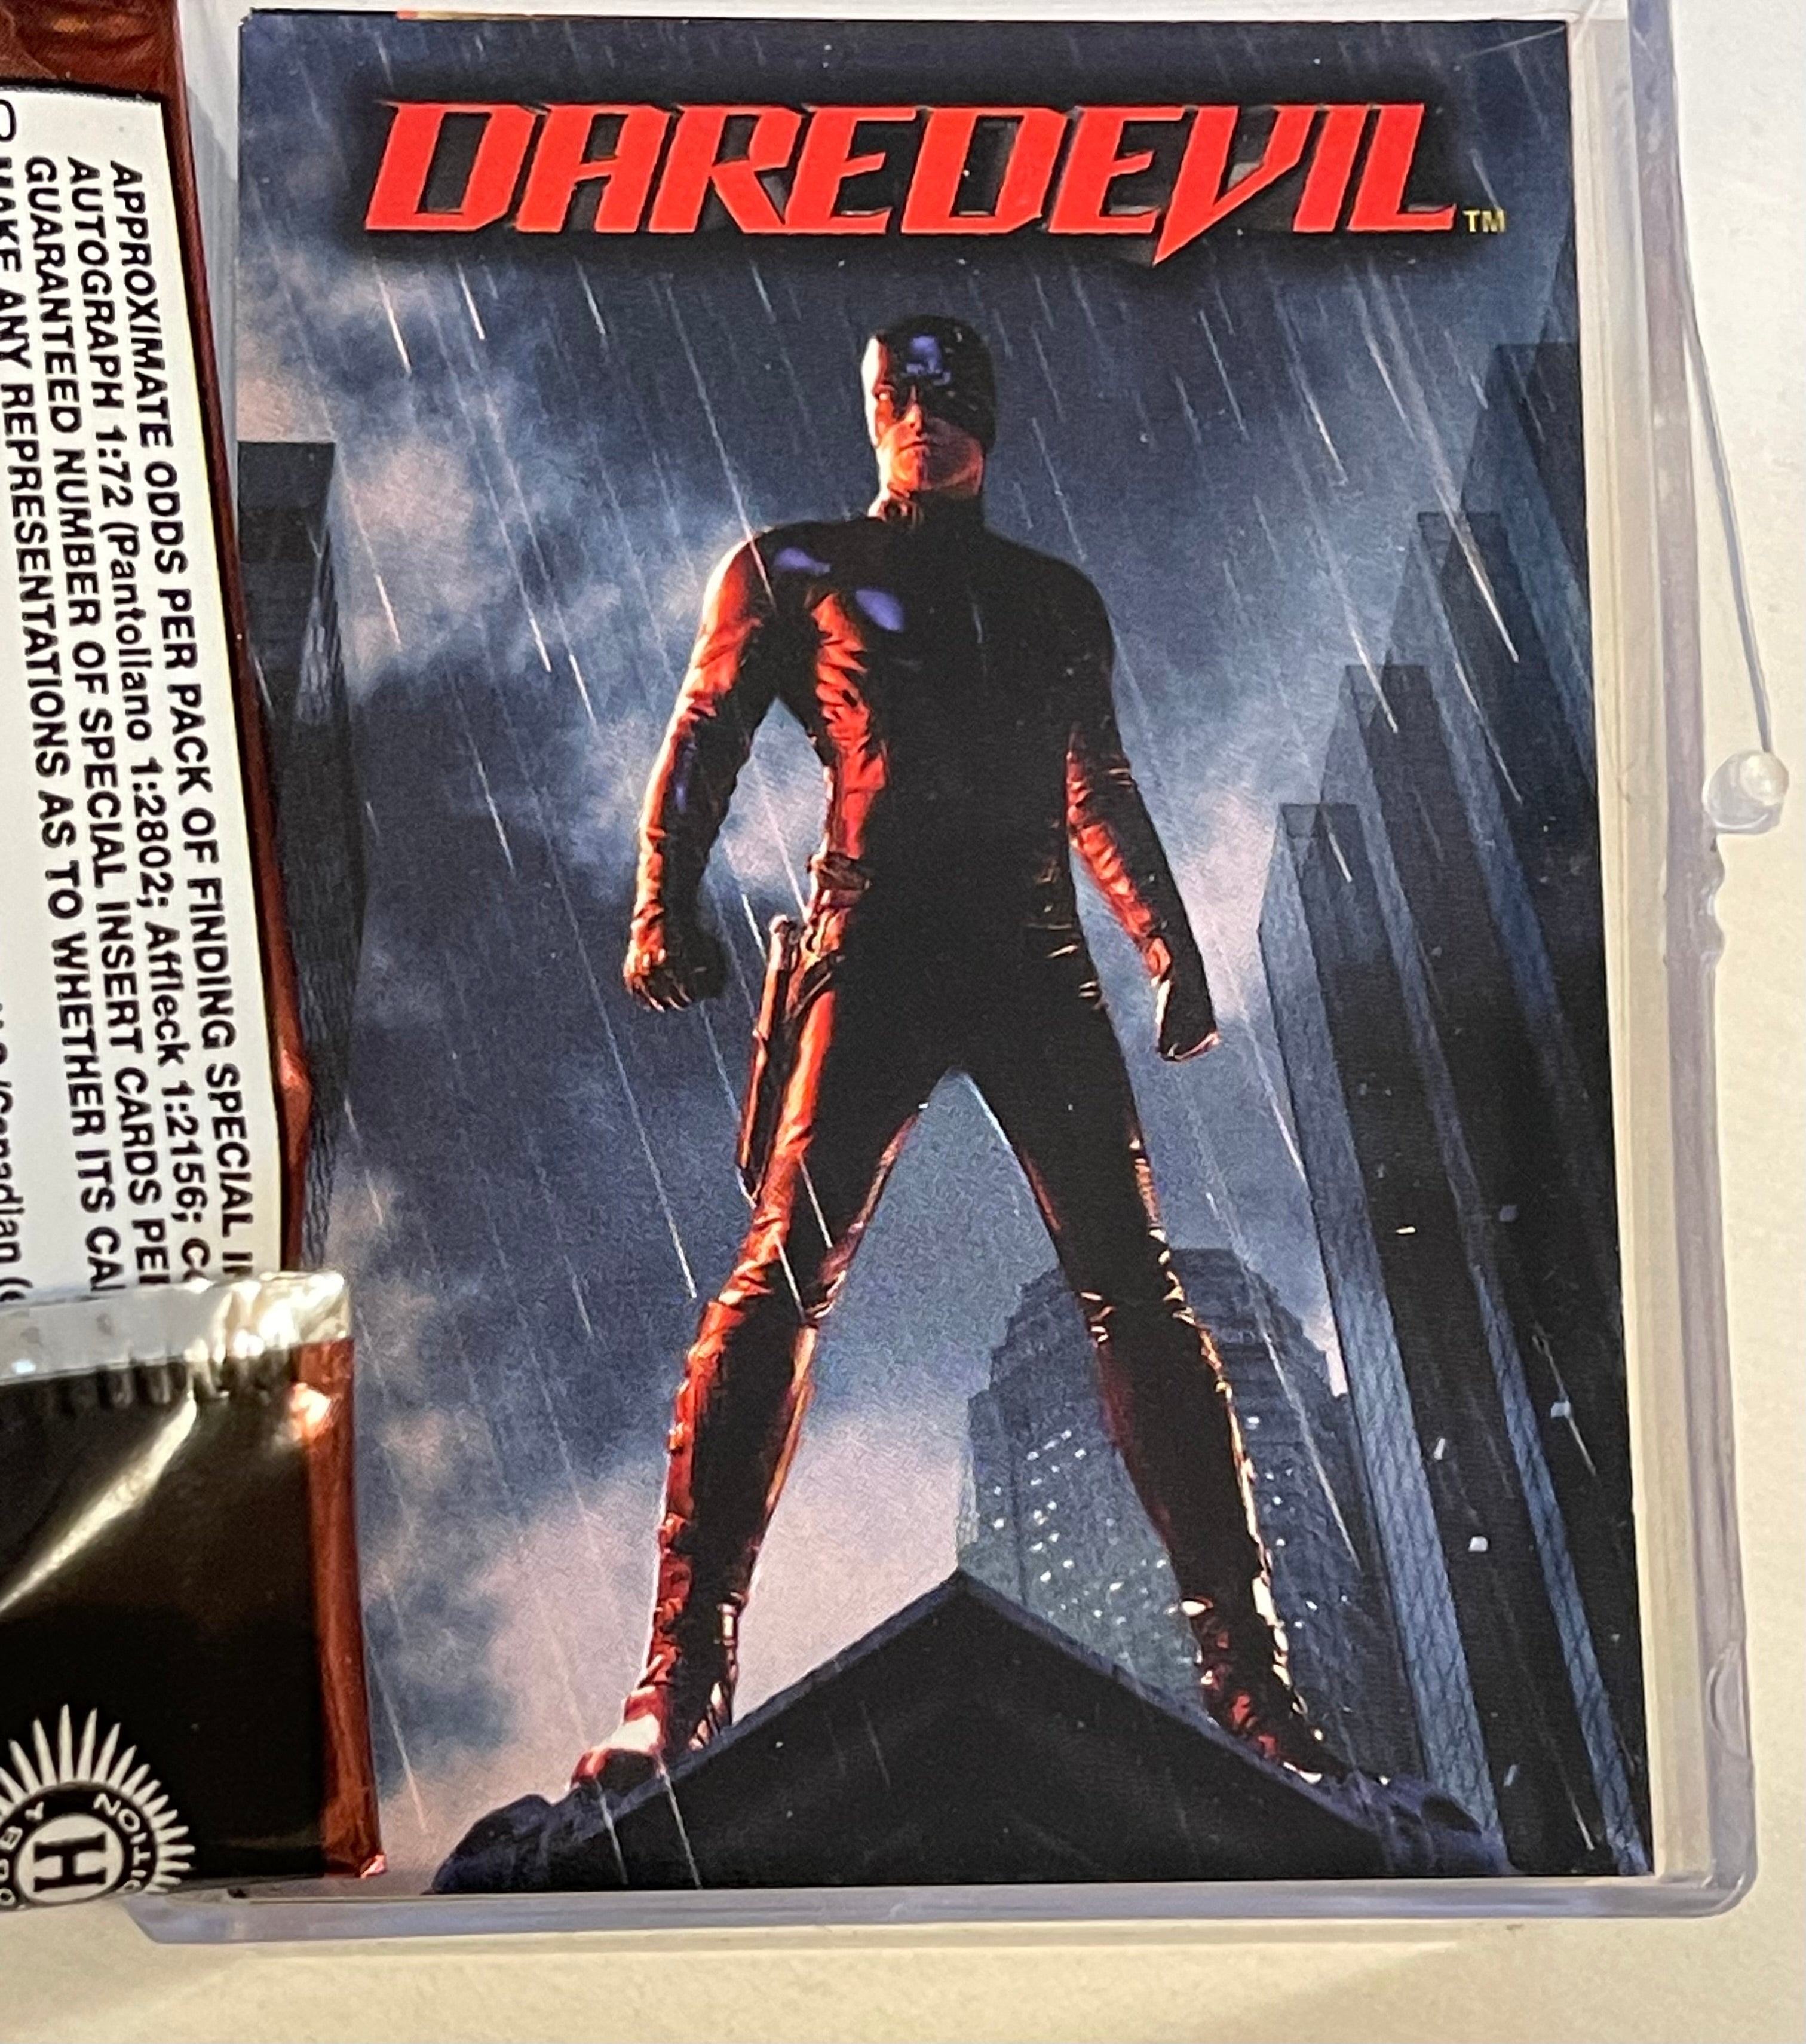 Daredevil movie Topps cards set 2003